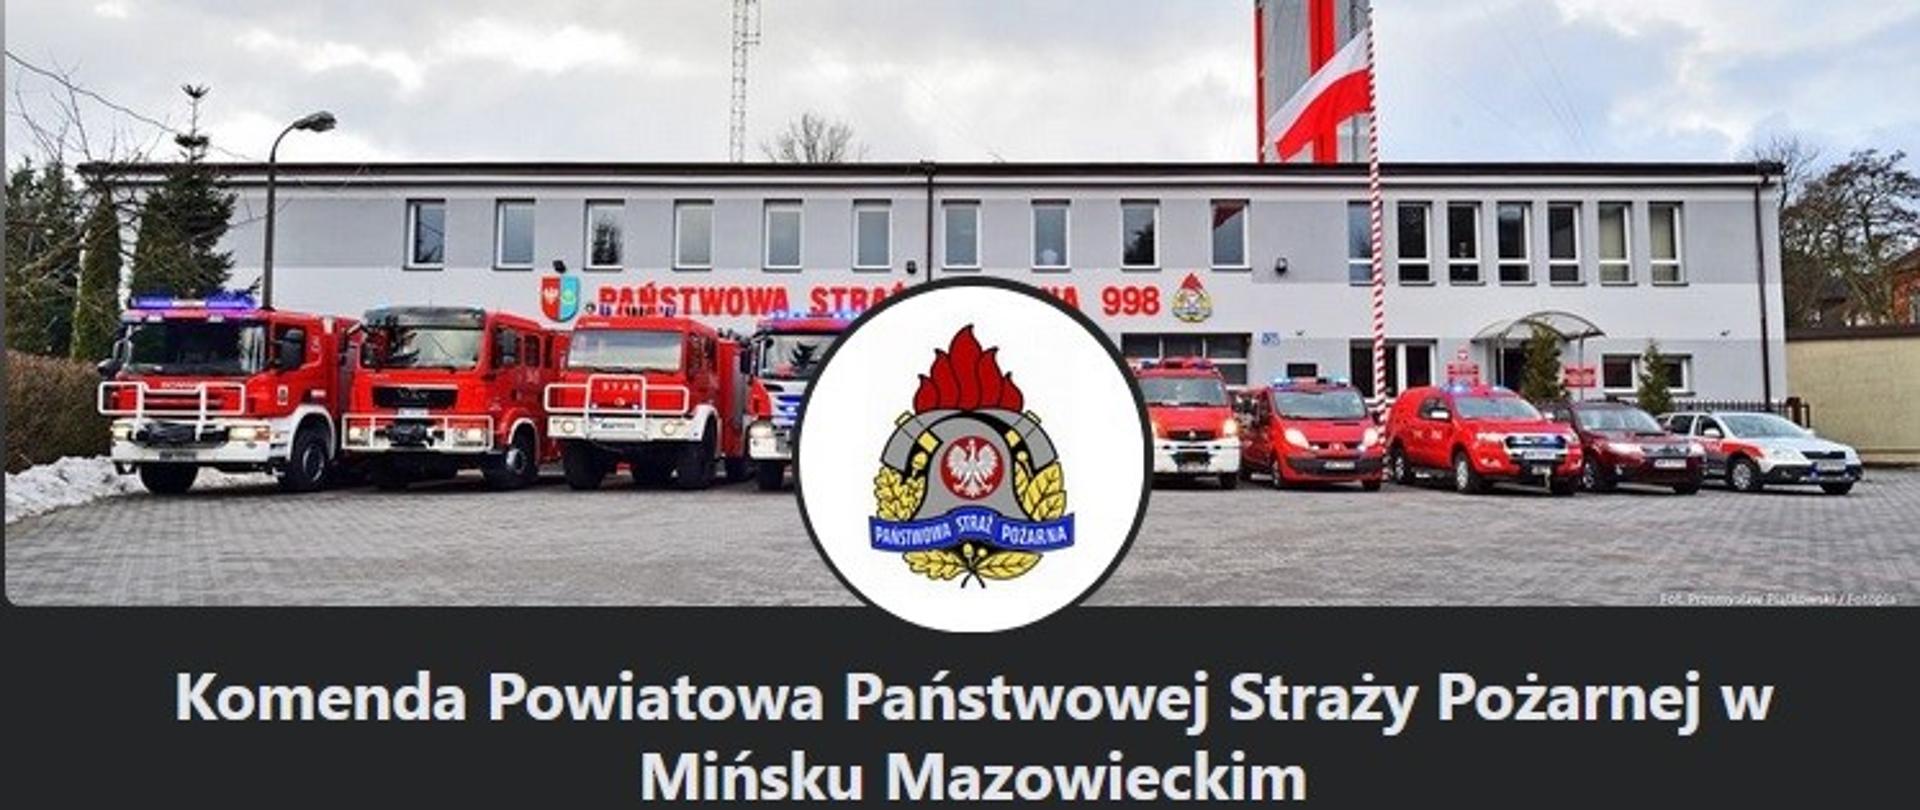 samochody pożarnicze KP PSP w Mińsku Mazowieckim ustawione w rzędzie przed budynkiem komendy